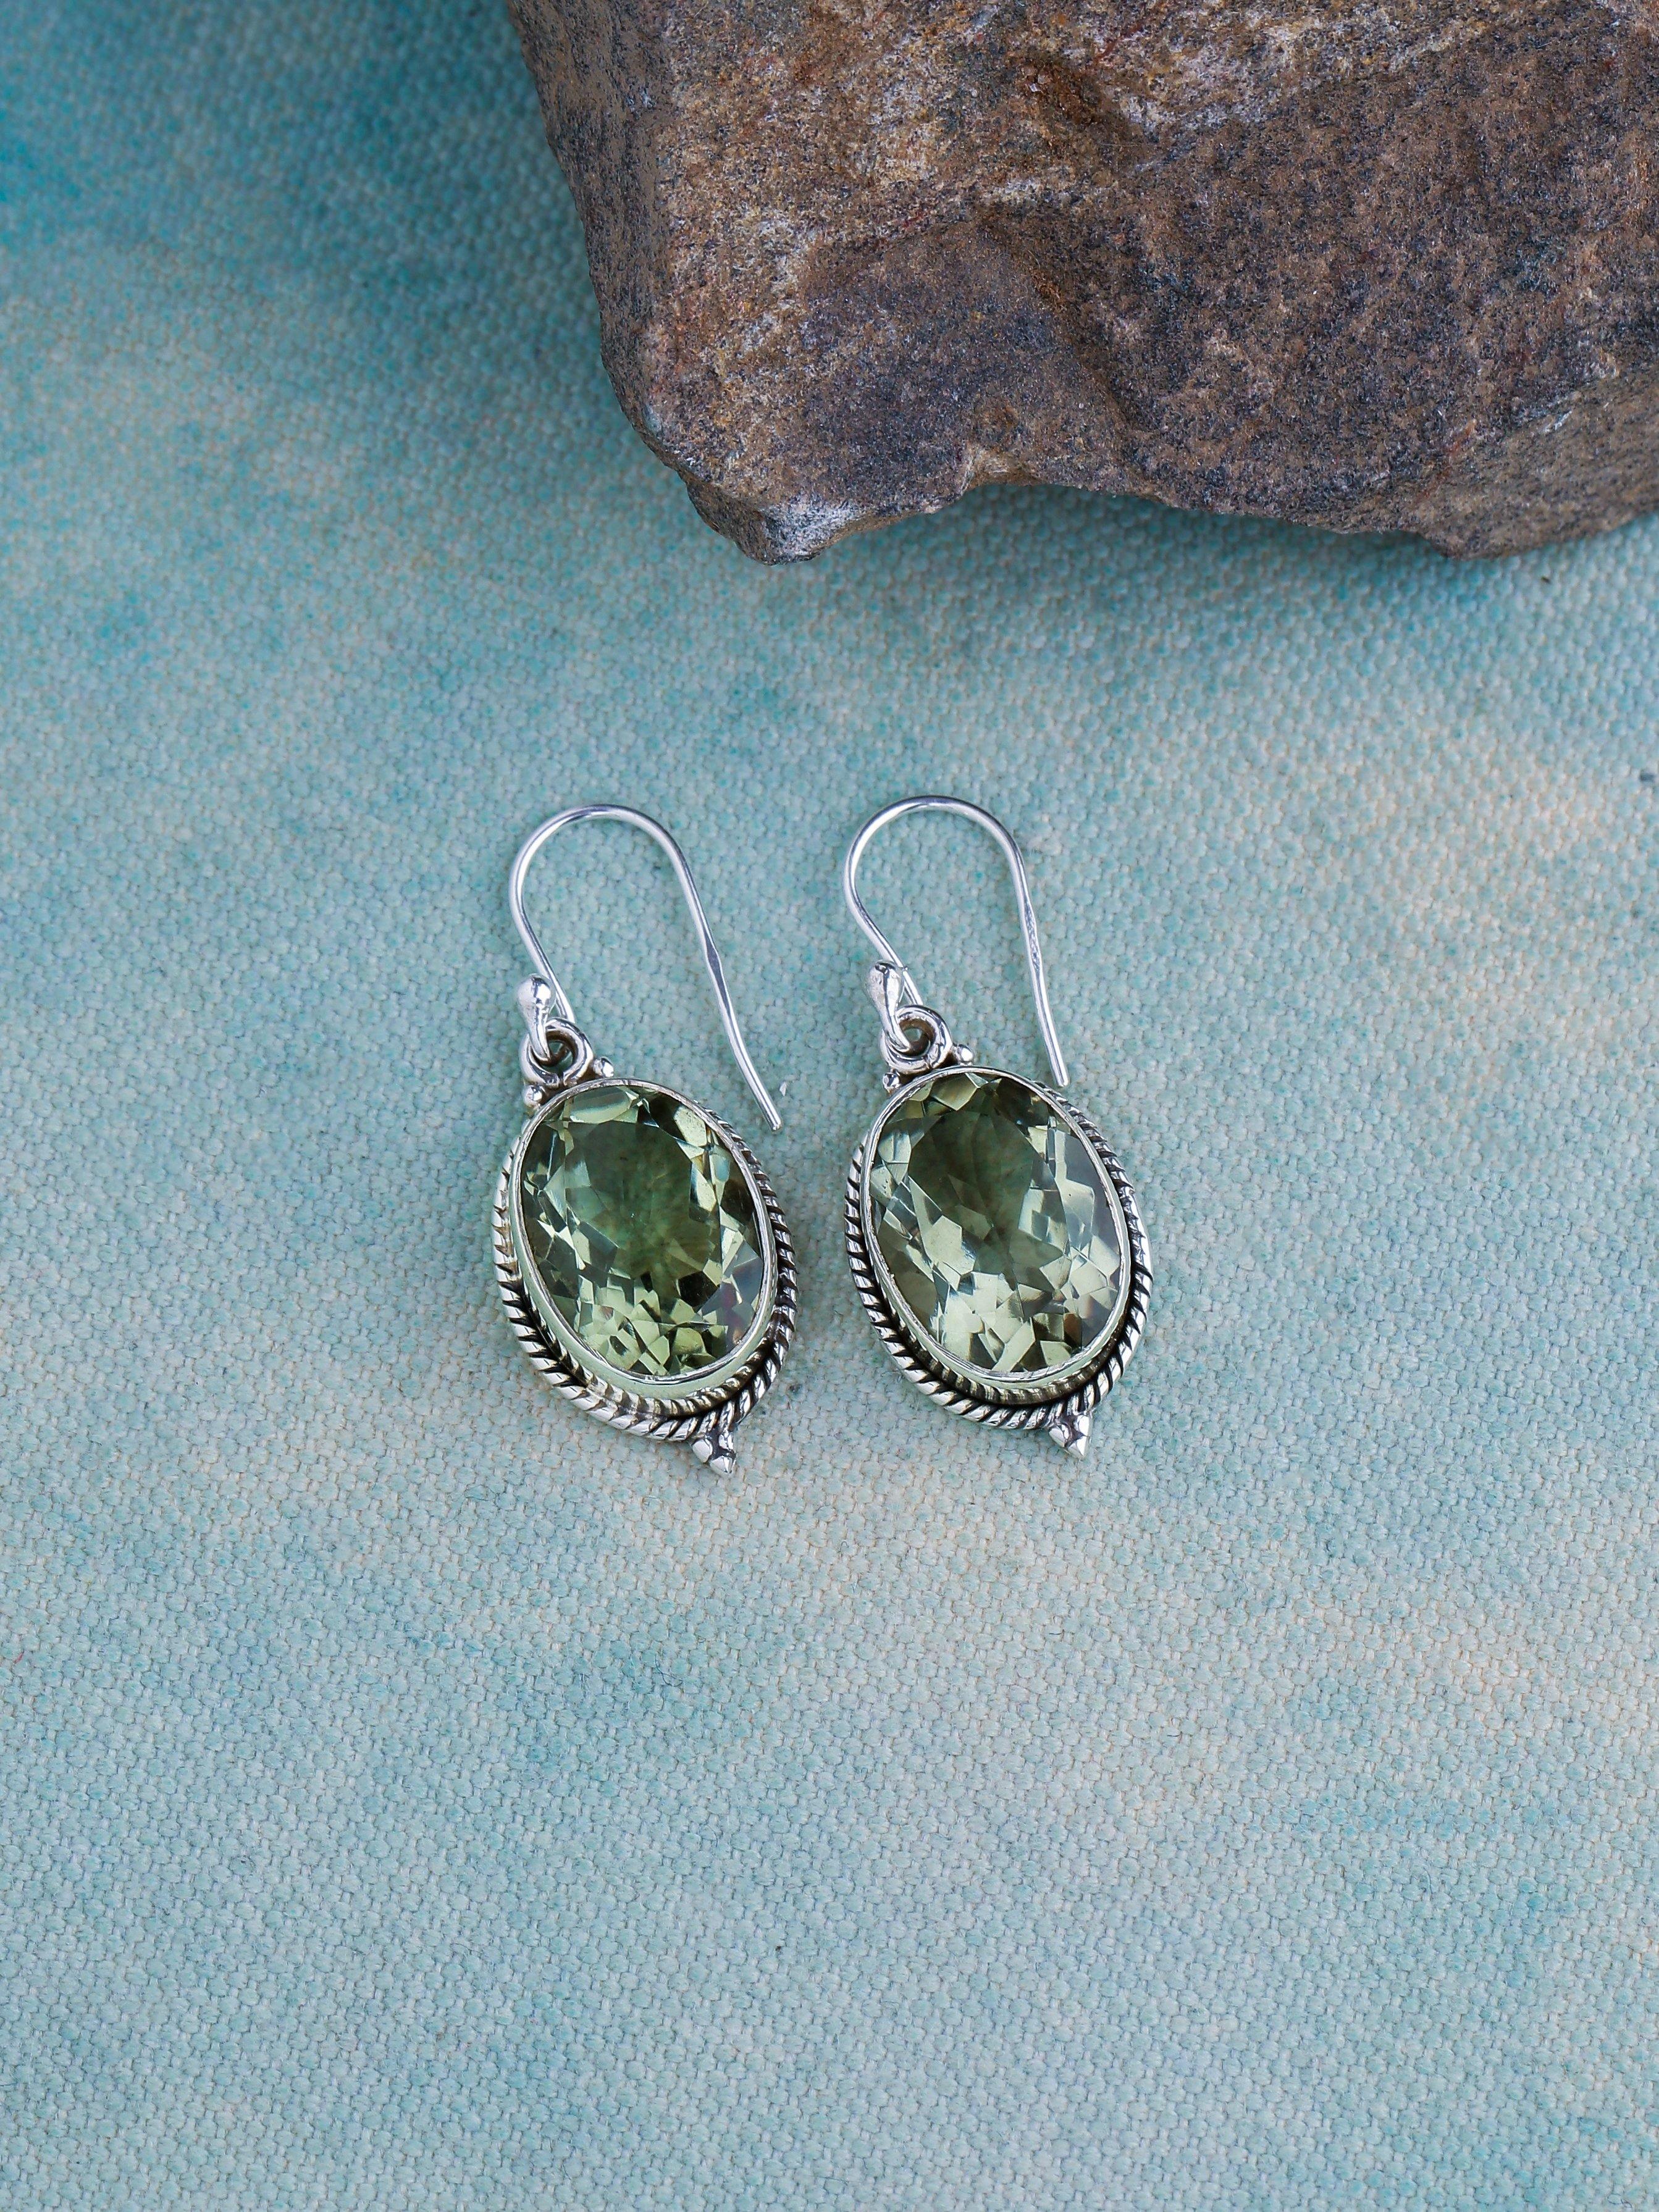 Green Amethyst Solid 925 Sterling Silver Dangle Earrings Jewelry - YoTreasure